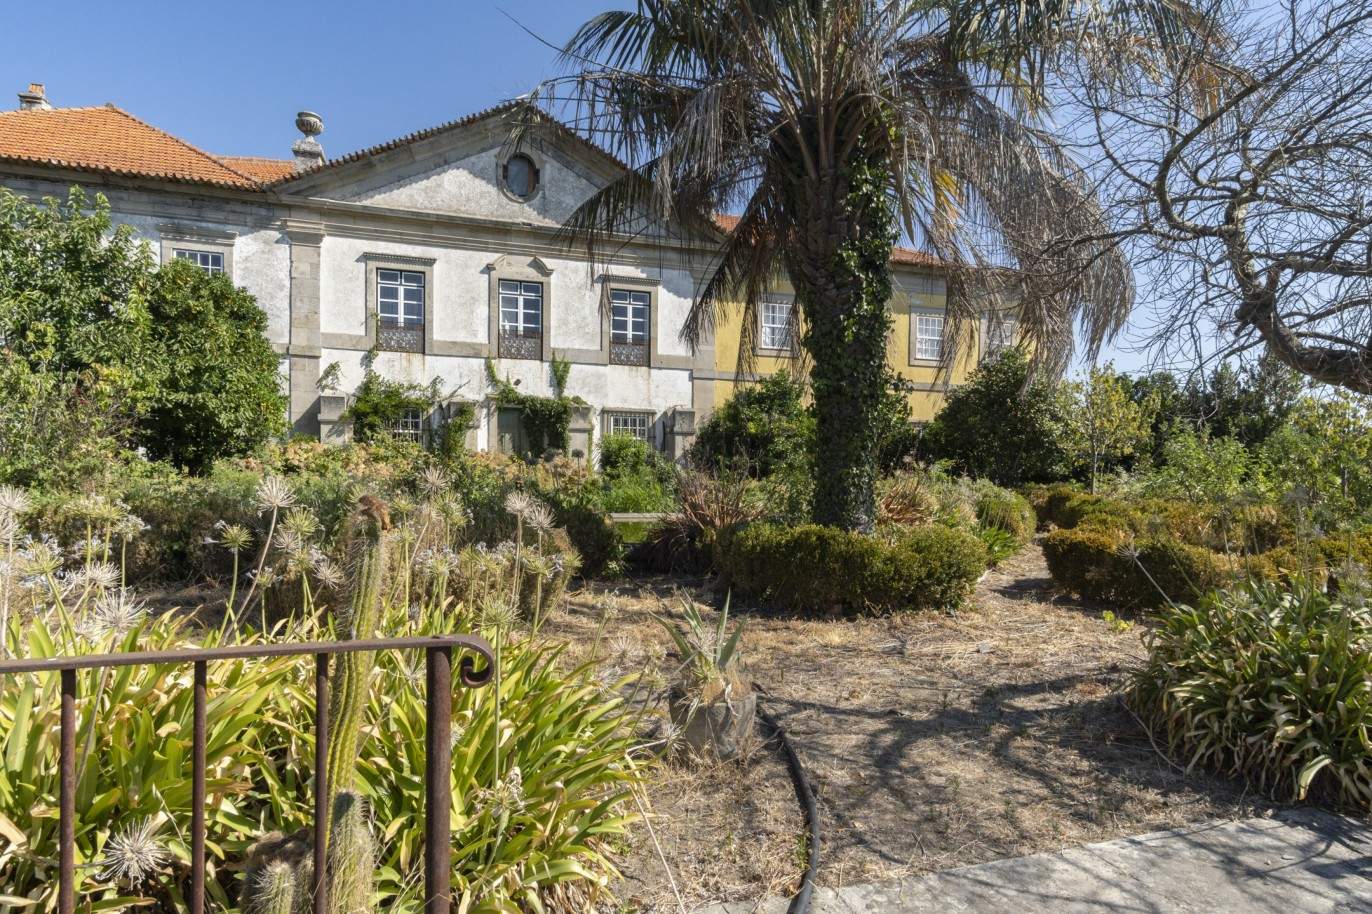 Vente : restauration du Palacete avec jardins et fontaine centenaire, à Lamego, Valeé du Douro, nord du Portugal_207374